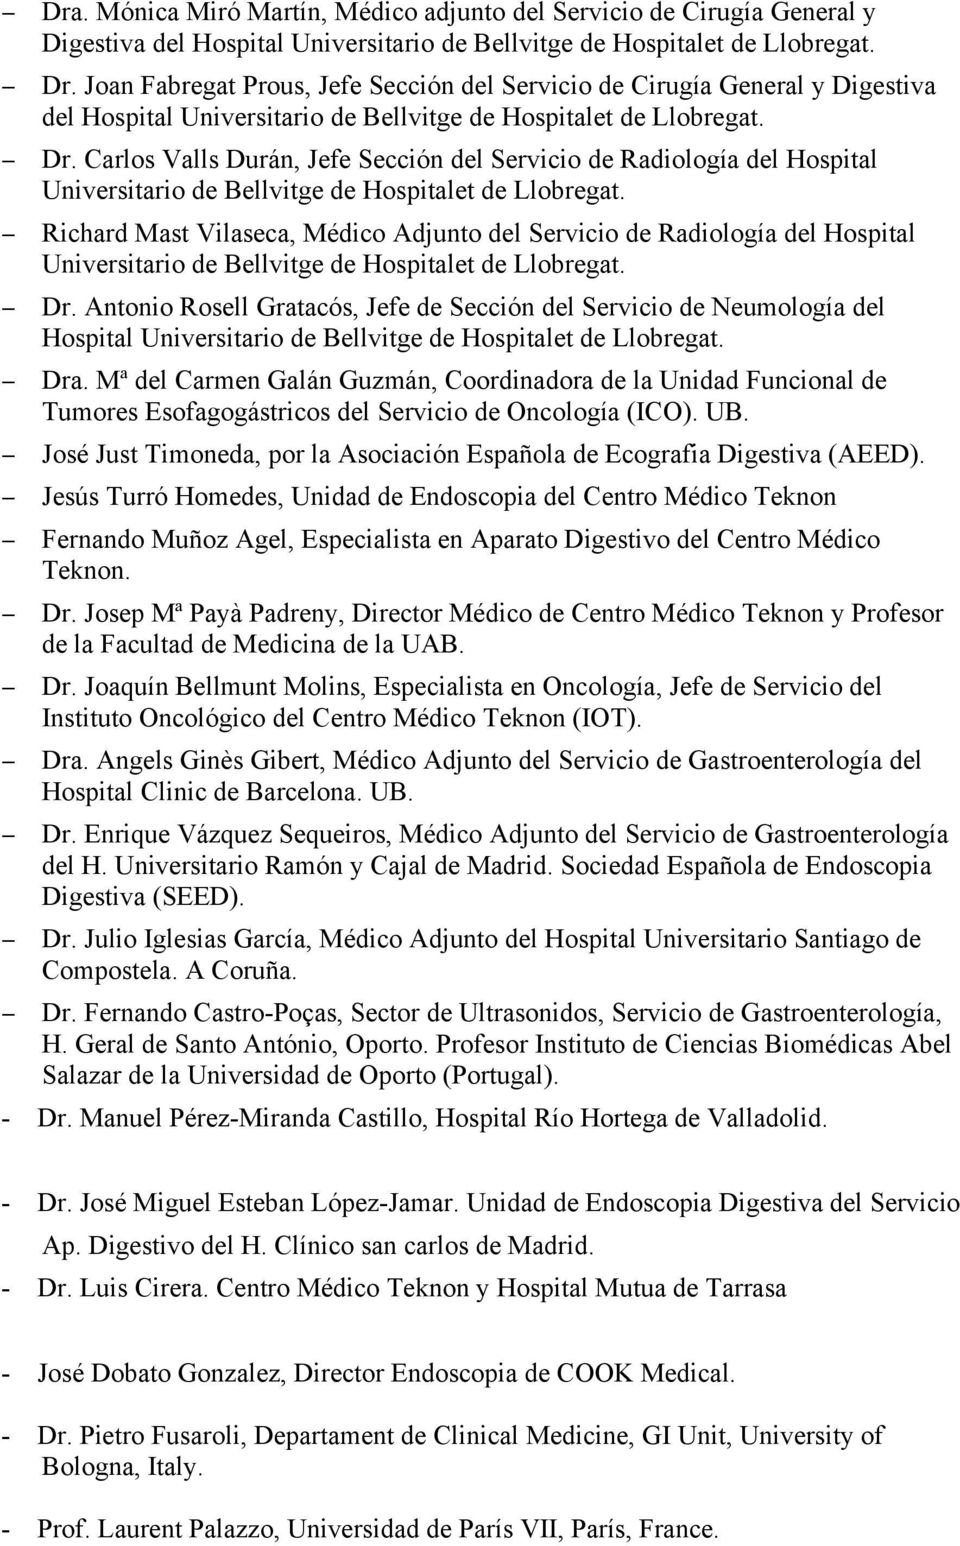 Carlos Valls Durán, Jefe Sección del Servicio de Radiología del Hospital Universitario de Bellvitge de Hospitalet de Llobregat.